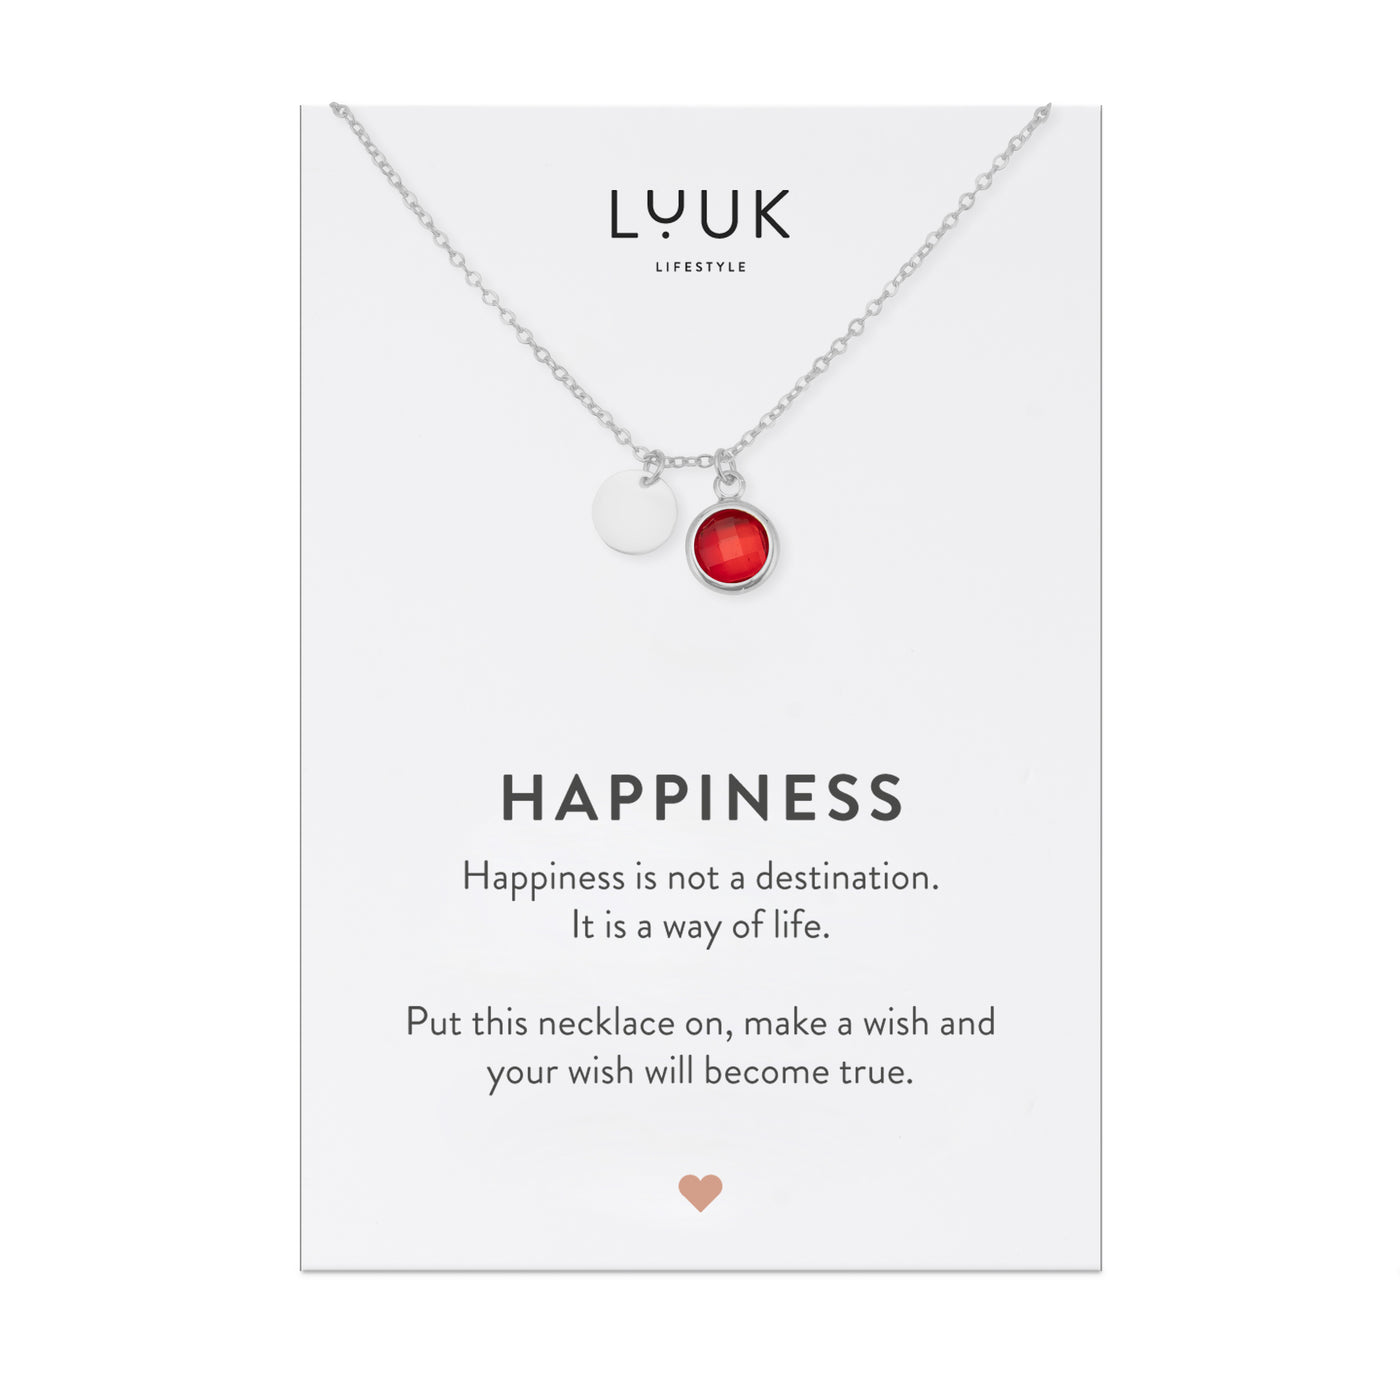 Silberne Halskette mit rotem Edelstein Anhänger auf motivierender Happiness Spruchkarte von Luuk Lifestyle 